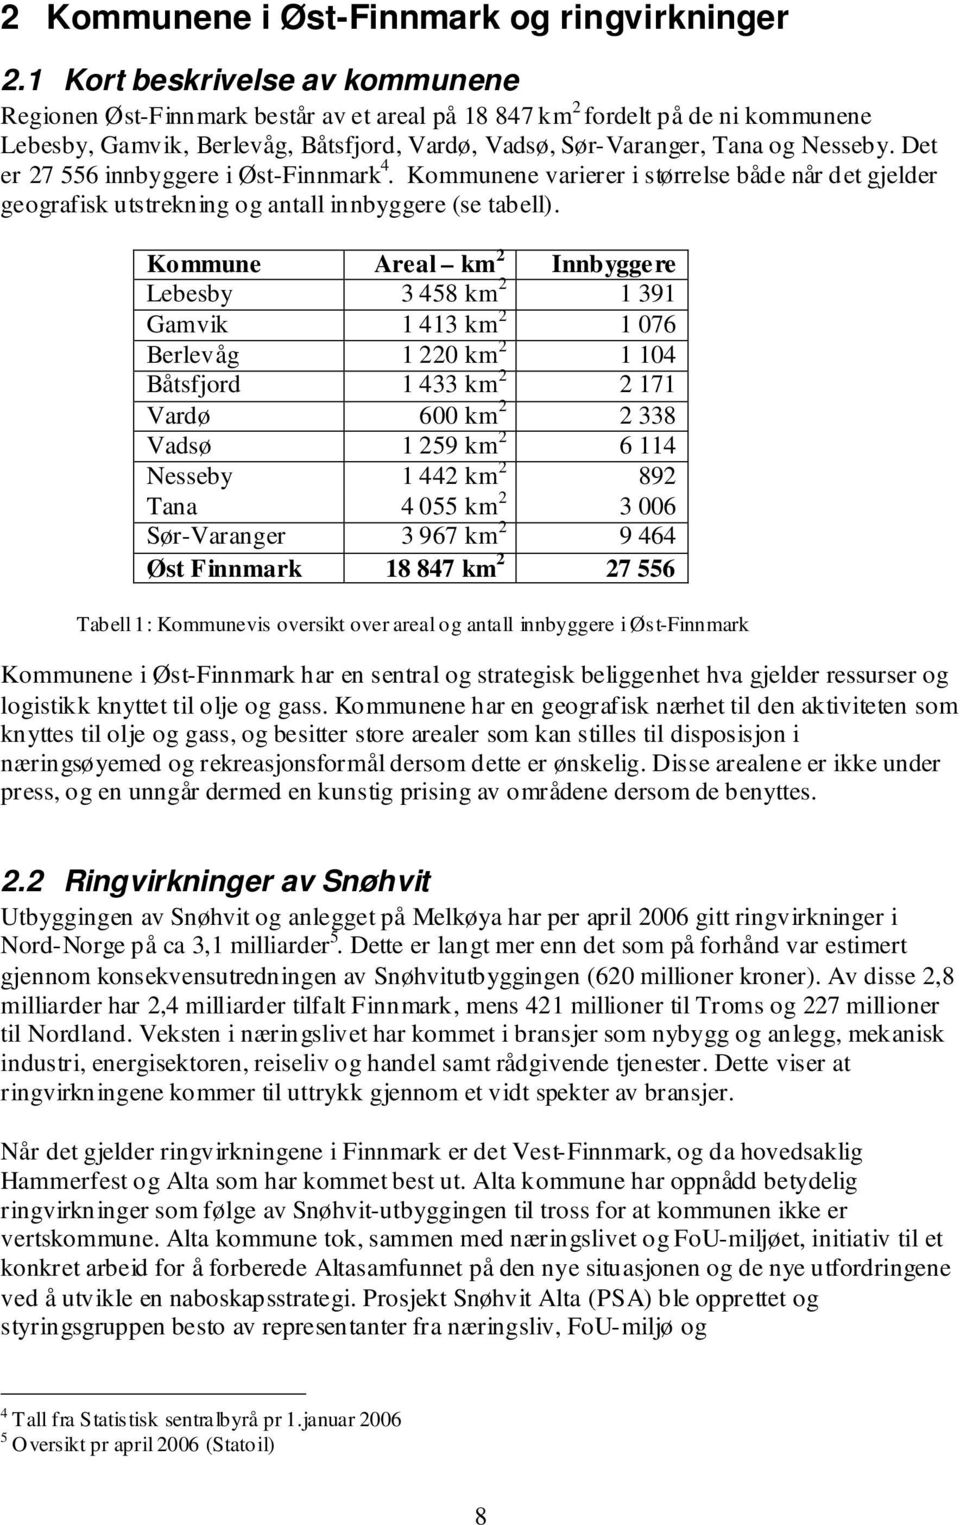 Det er 27 556 innbyggere i Øst-Finnmark 4. Kommunene varierer i størrelse både når det gjelder geografisk utstrekning og antall innbyggere (se tabell).